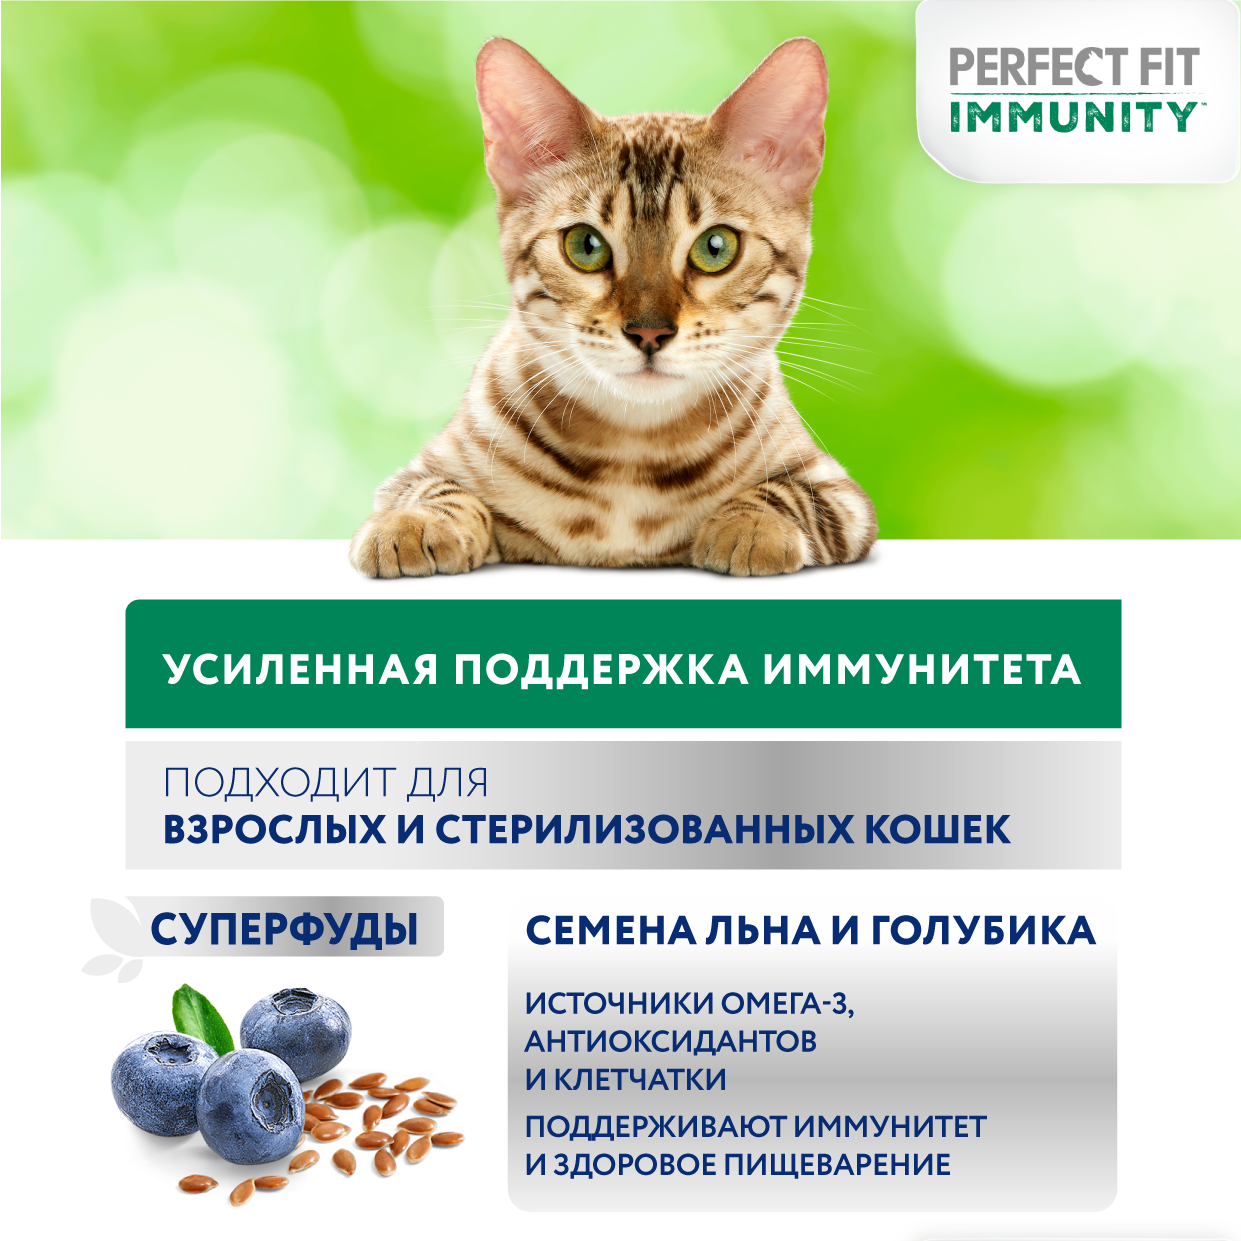 Сухой корм для иммунитета кошек Perfect Fit Immunity говядина, семена льна, голубика 580г